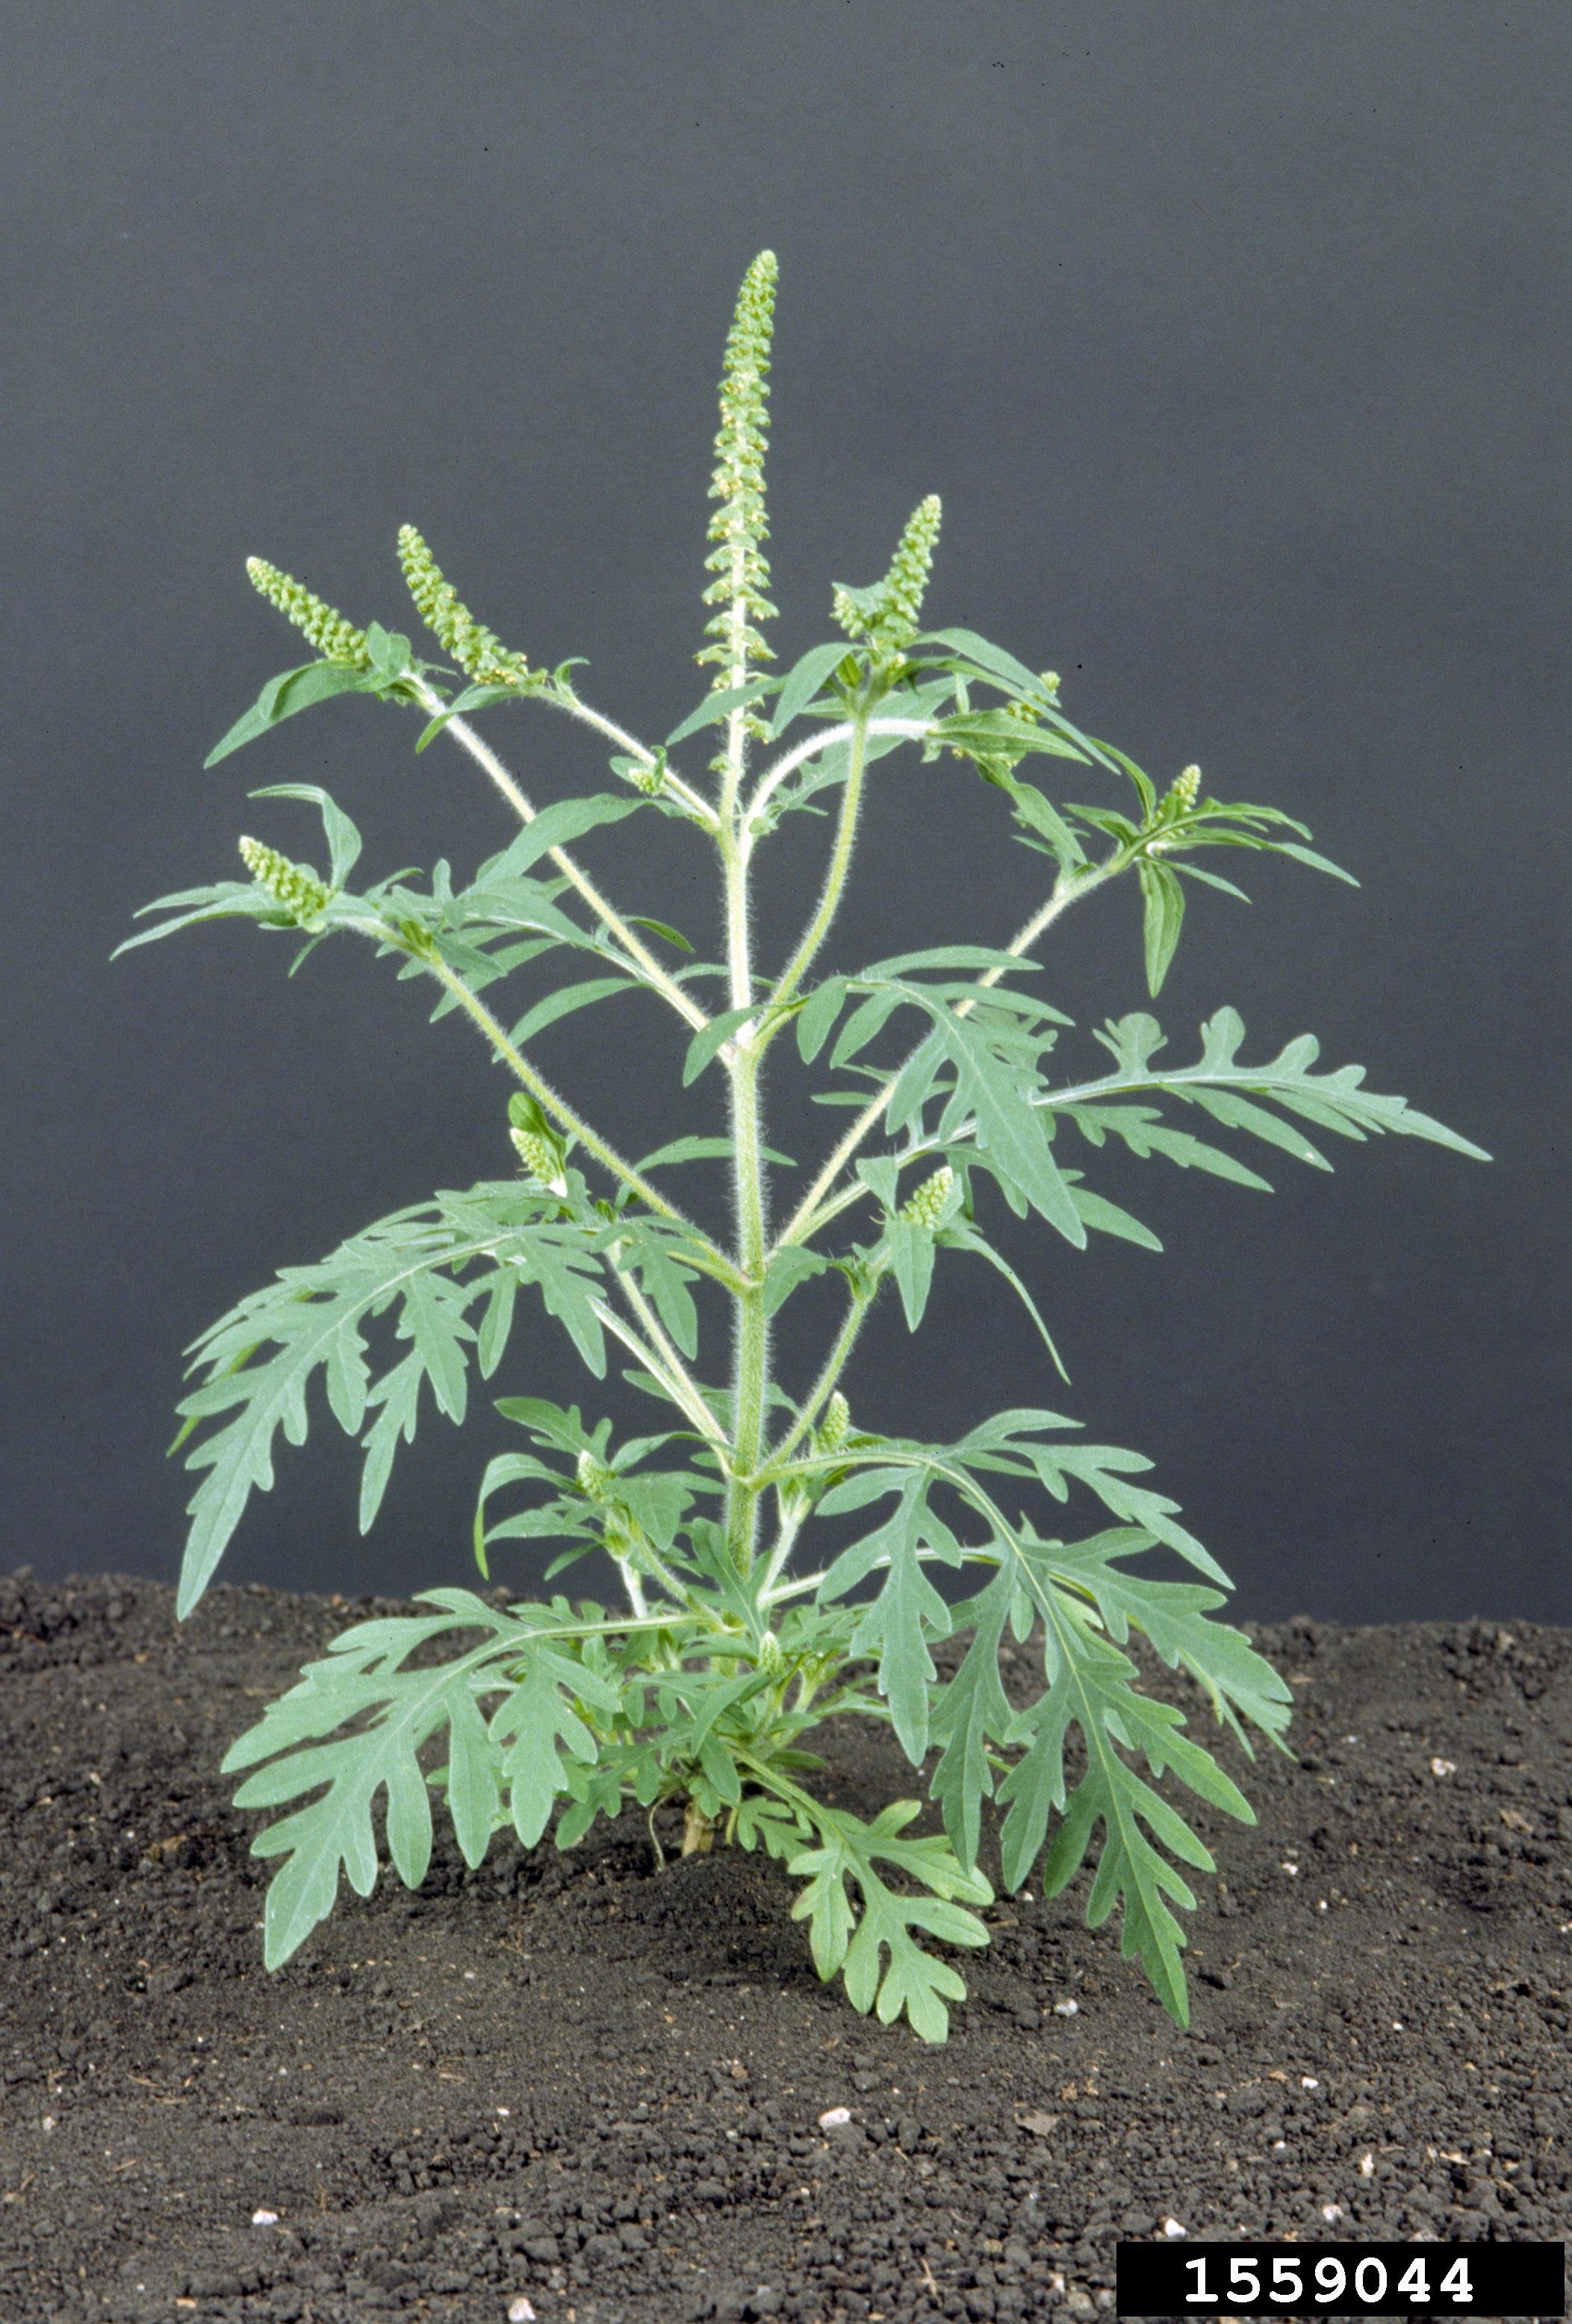 Image of Common ragweed invasive weed